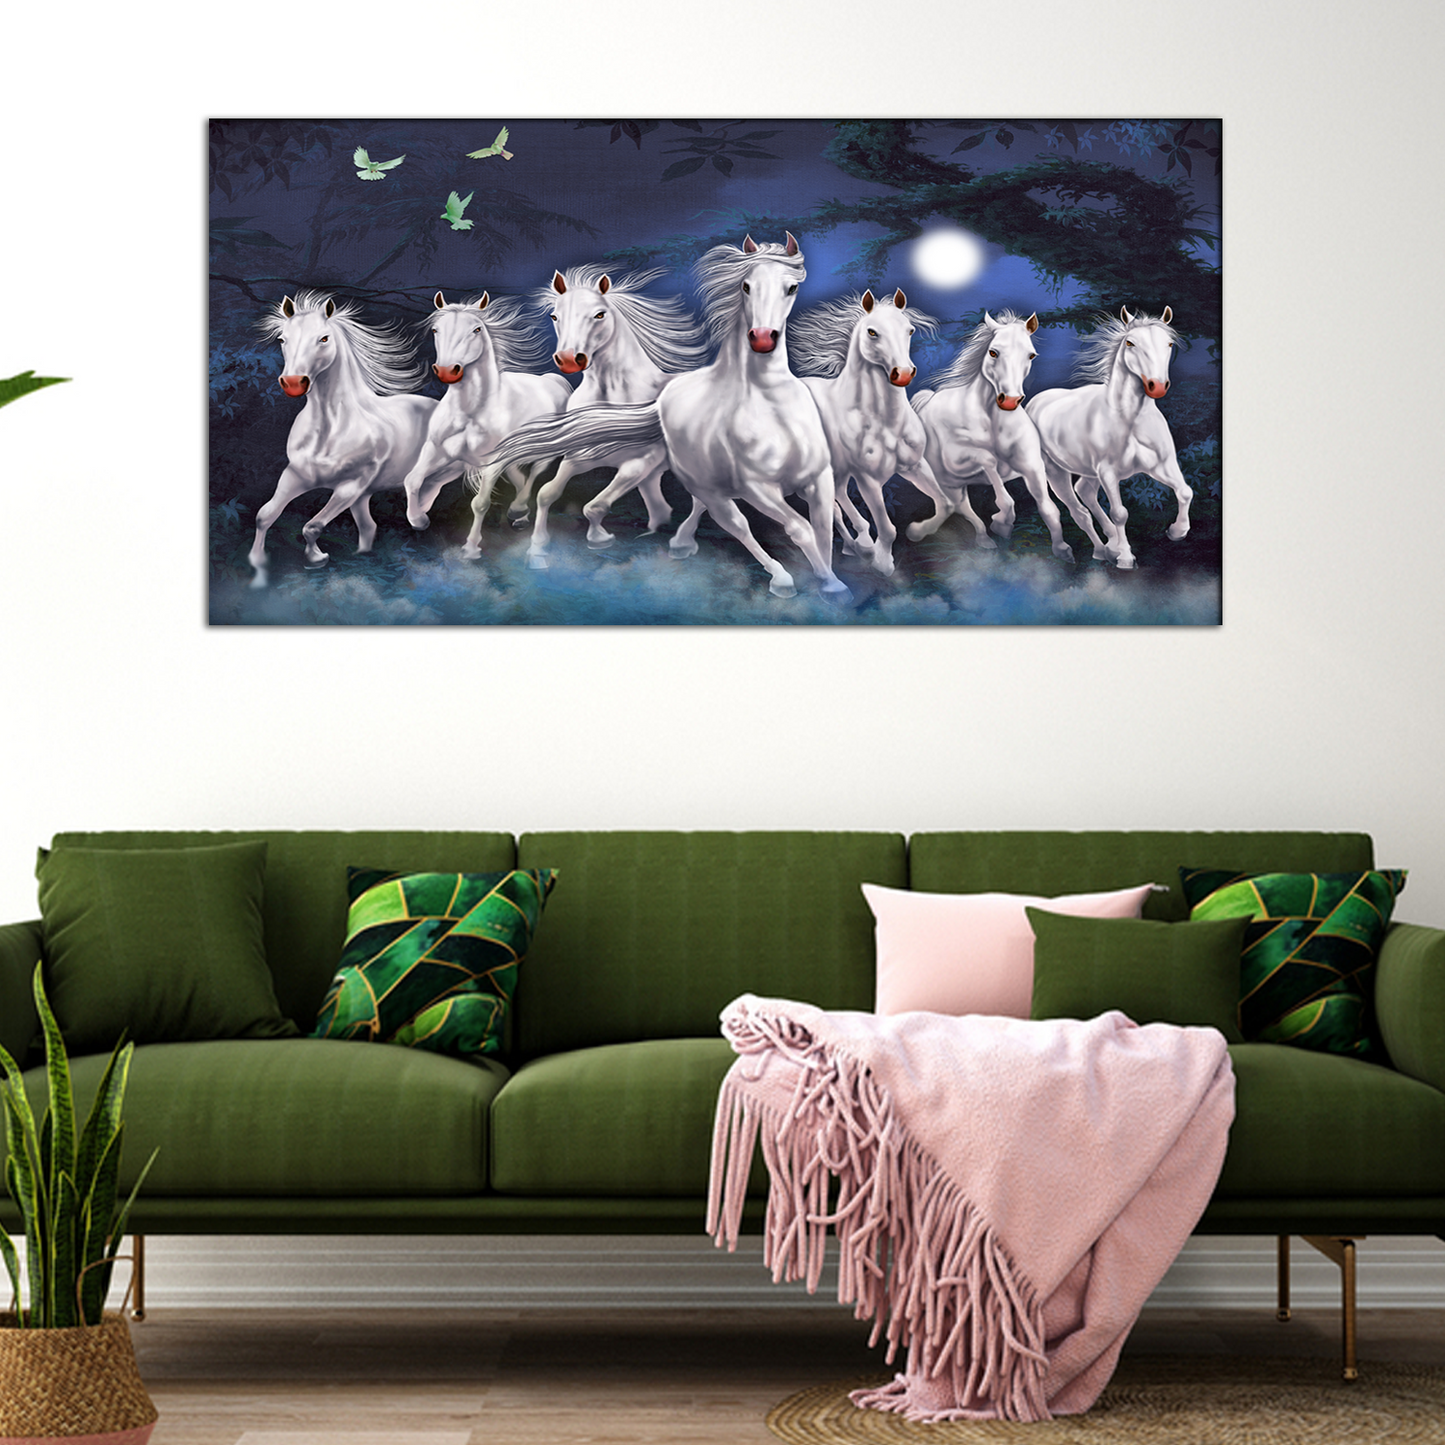 Horses Running at Night Canvas Print Wall Painting